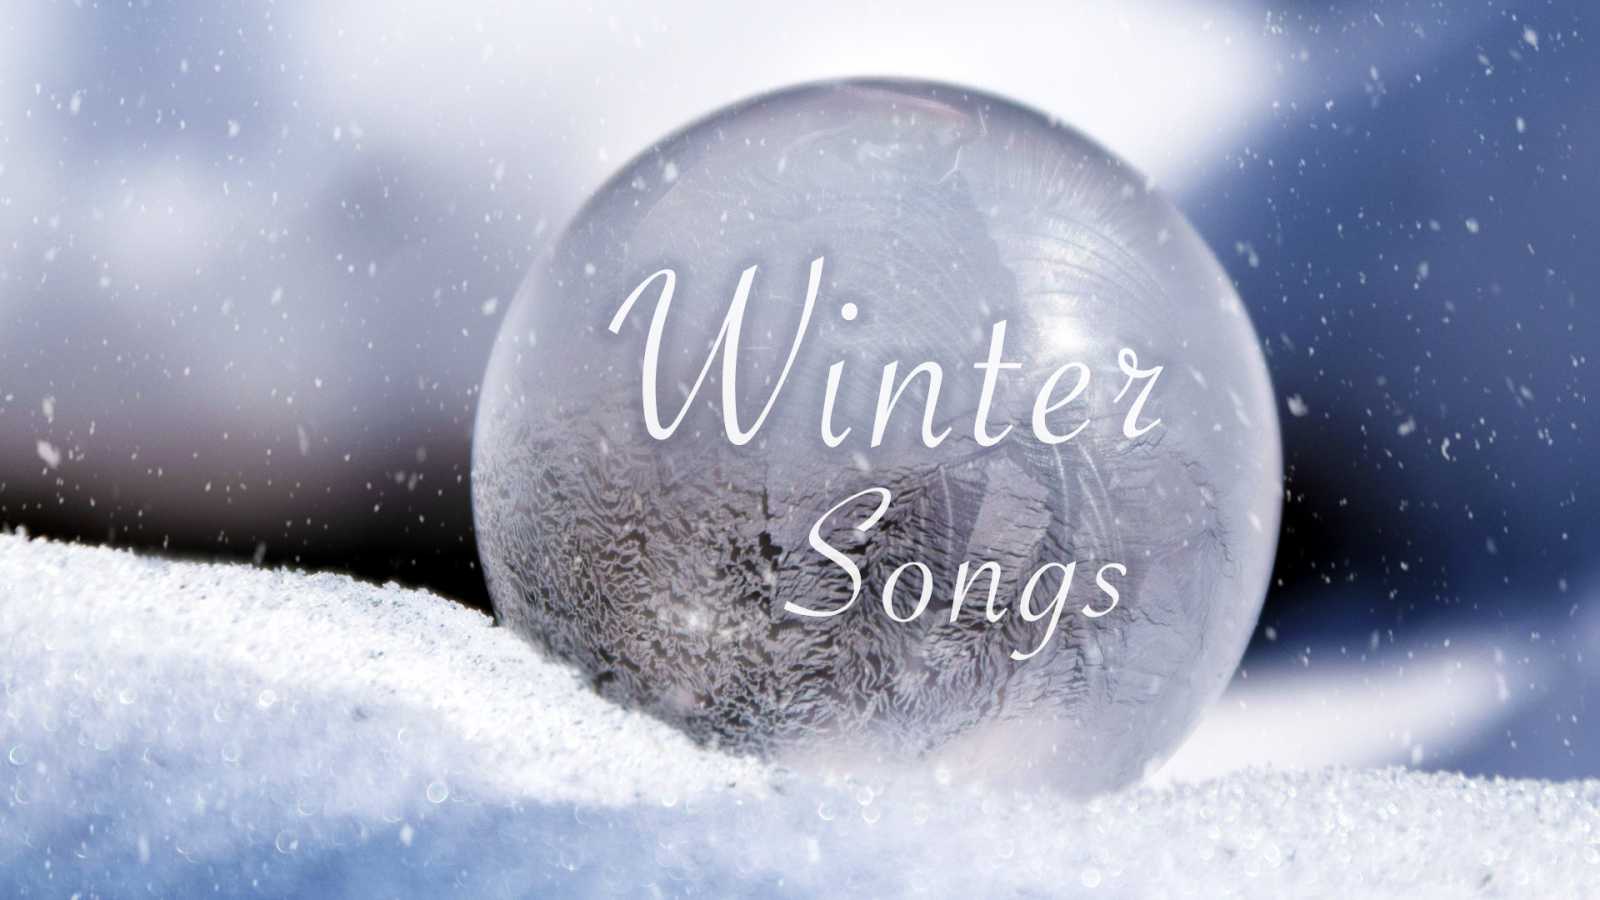 Playlist de inverno do JaME © JaME